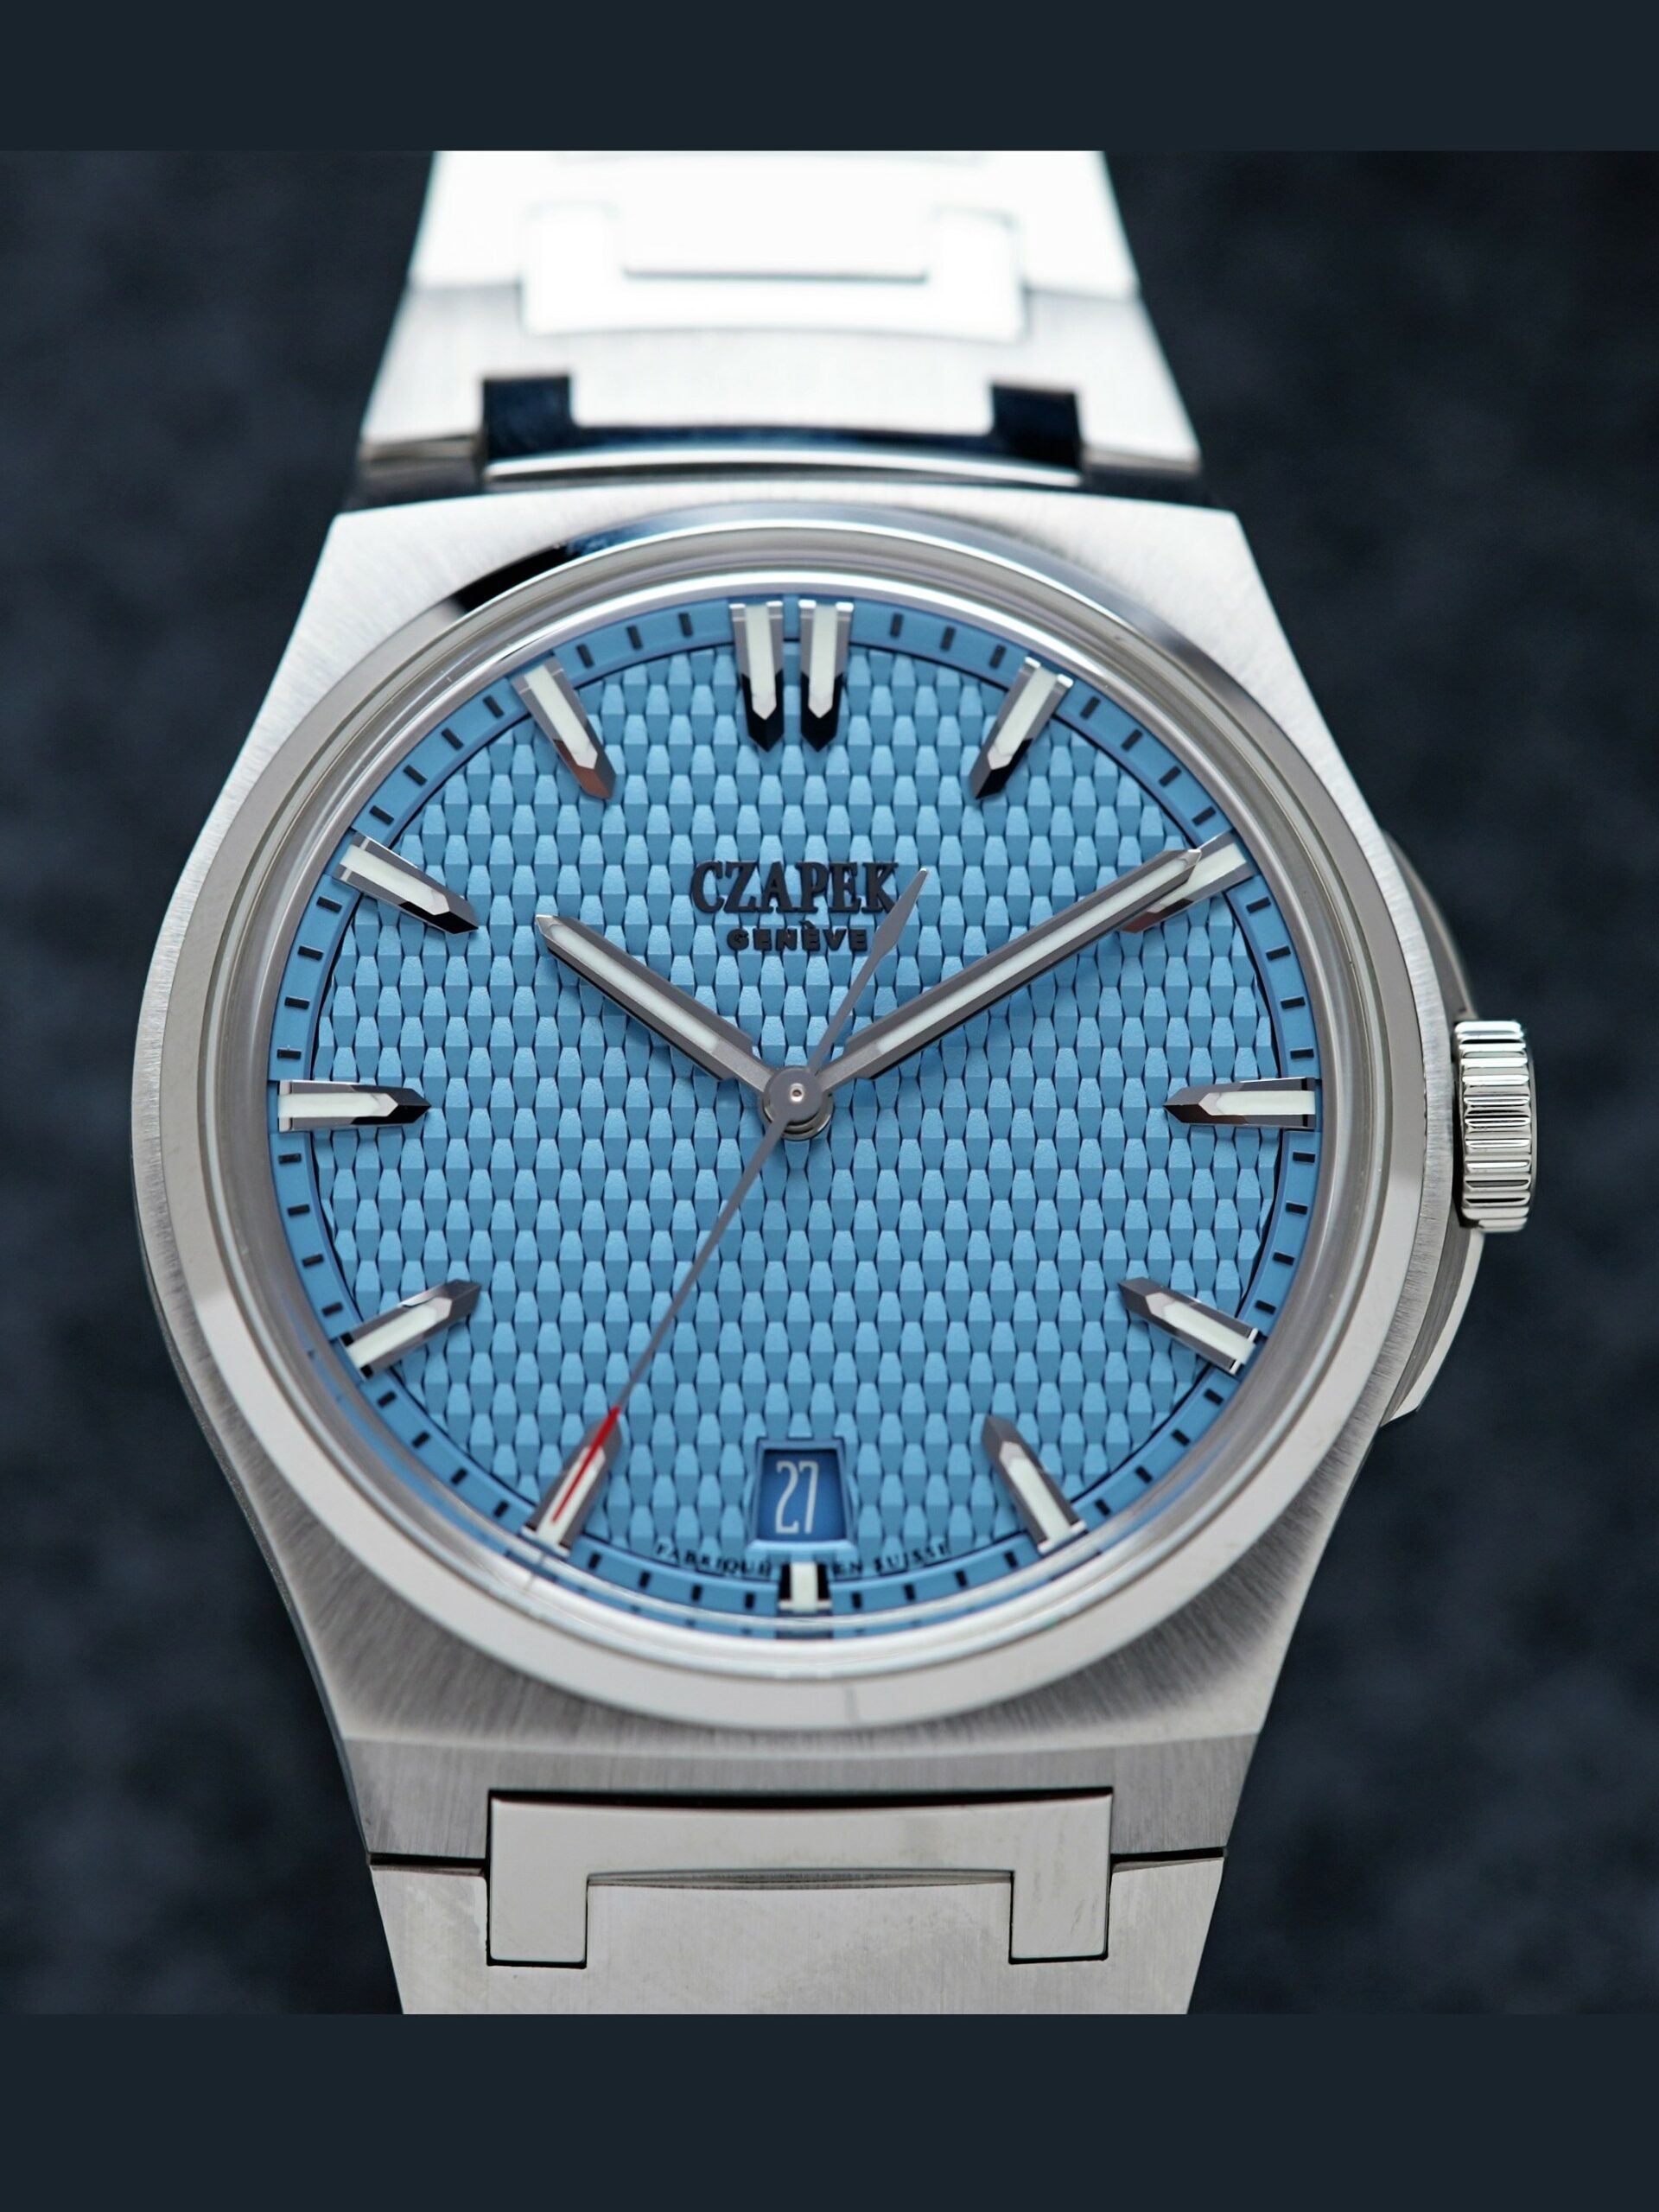 Czapek Passage de Drake Rare Glacier Blue Limited Production watch featured under white lighting.